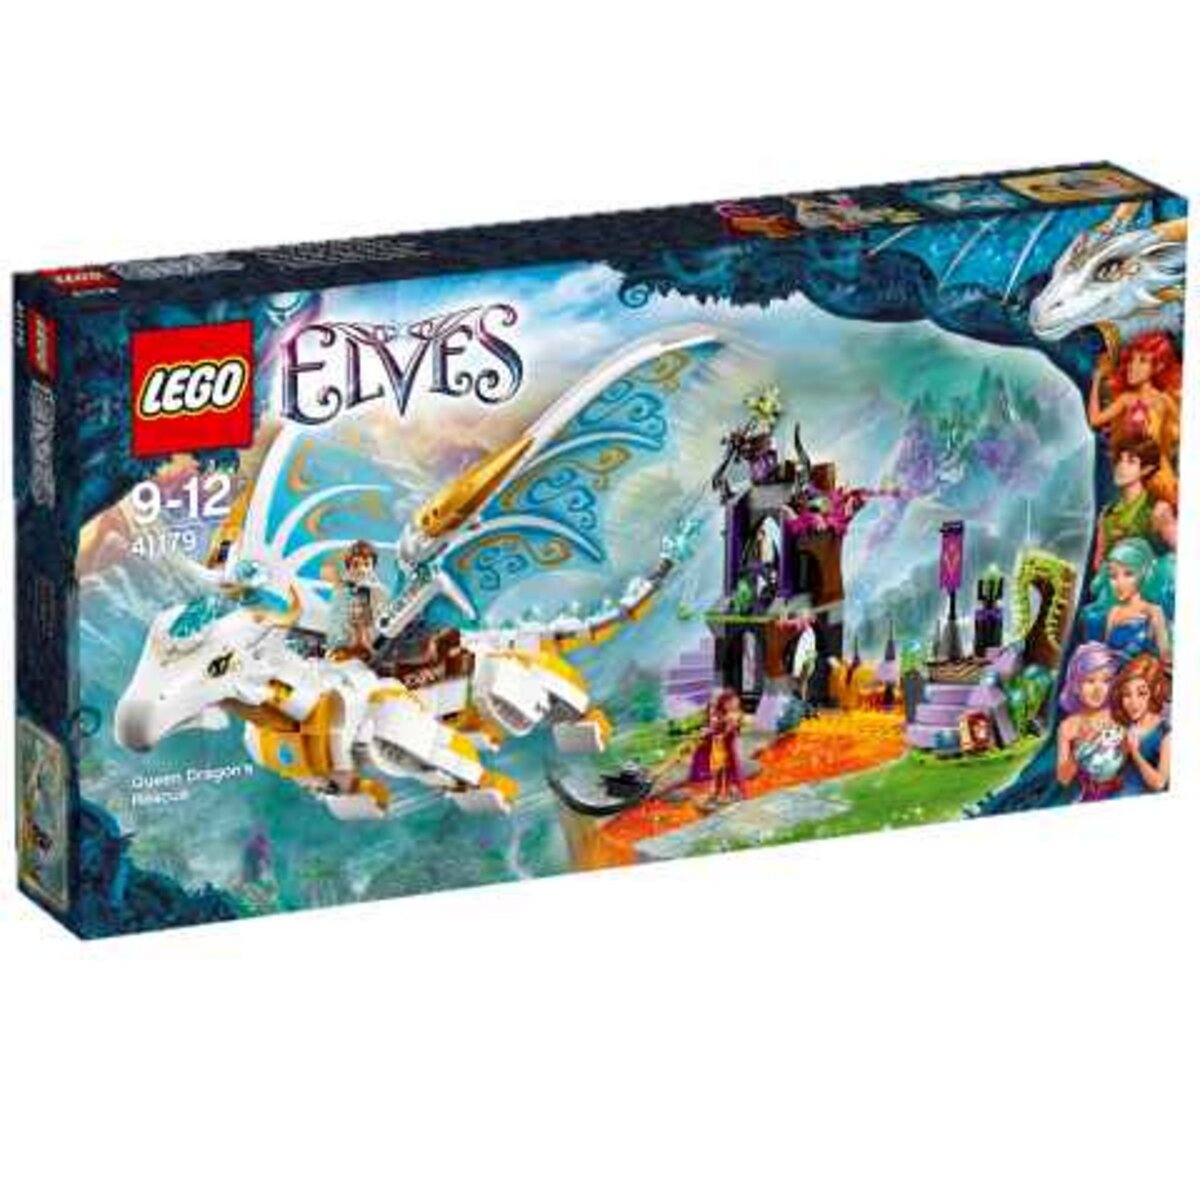 LEGO Elves 41179 - Le sauvetage de la reine dragon